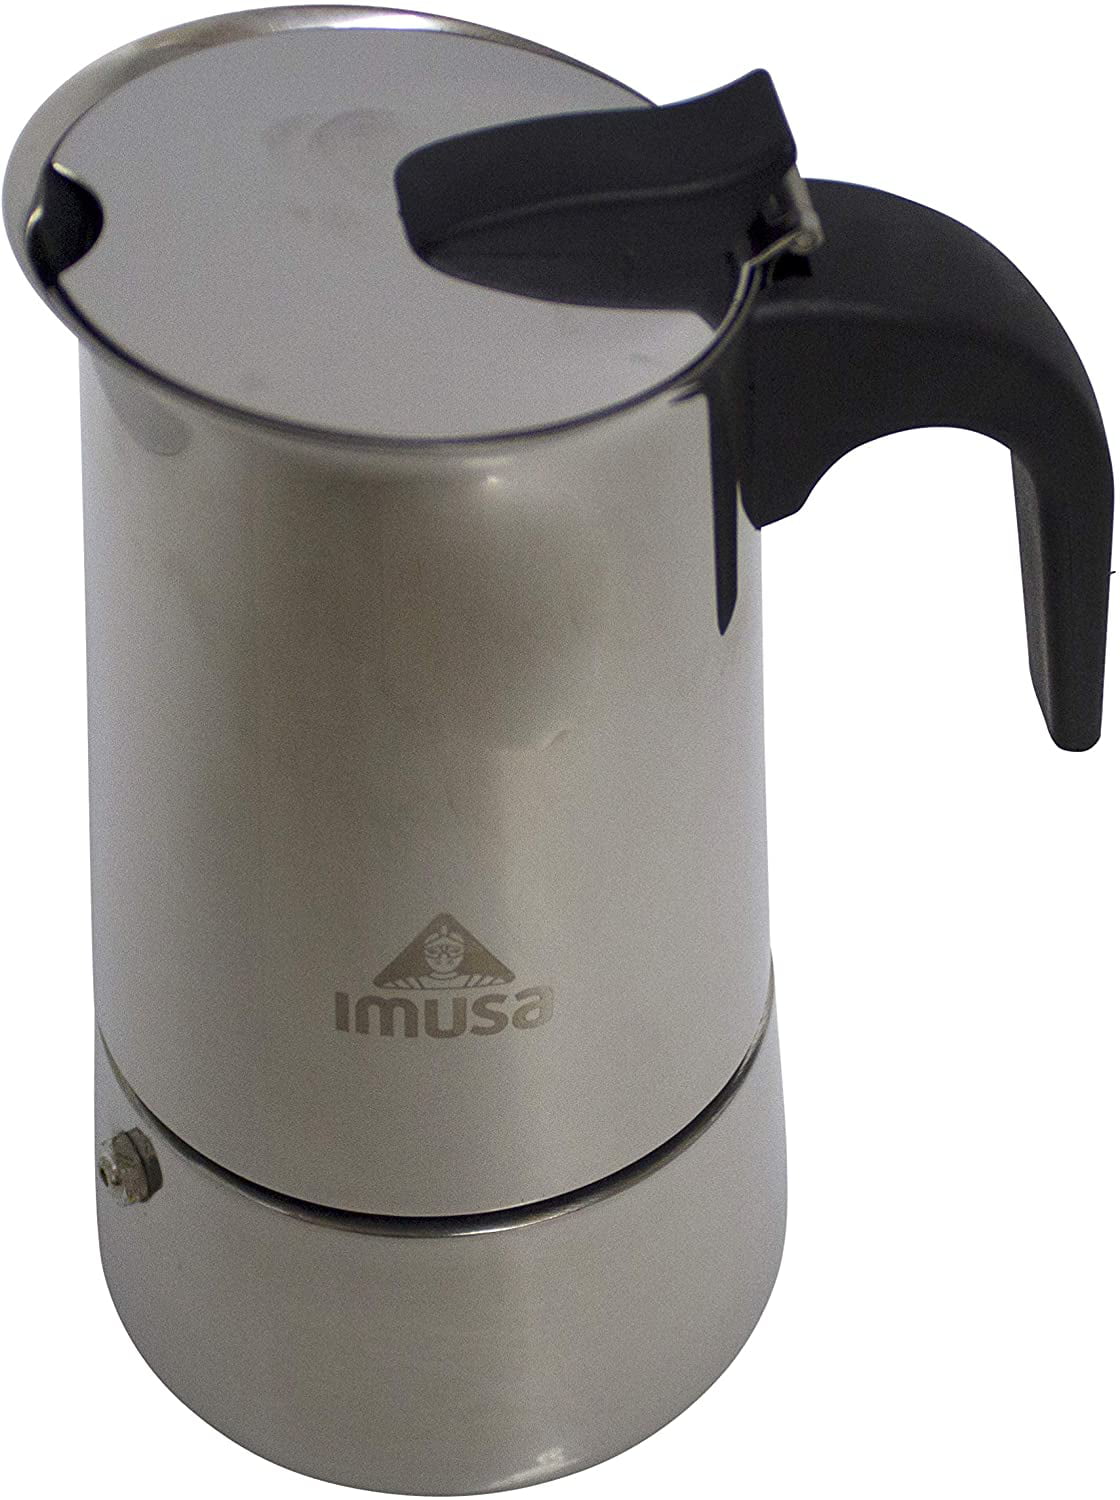 6 Cups Imusa stove top Aluminium Espresso Coffee Maker cafetera cappuccino cuban 